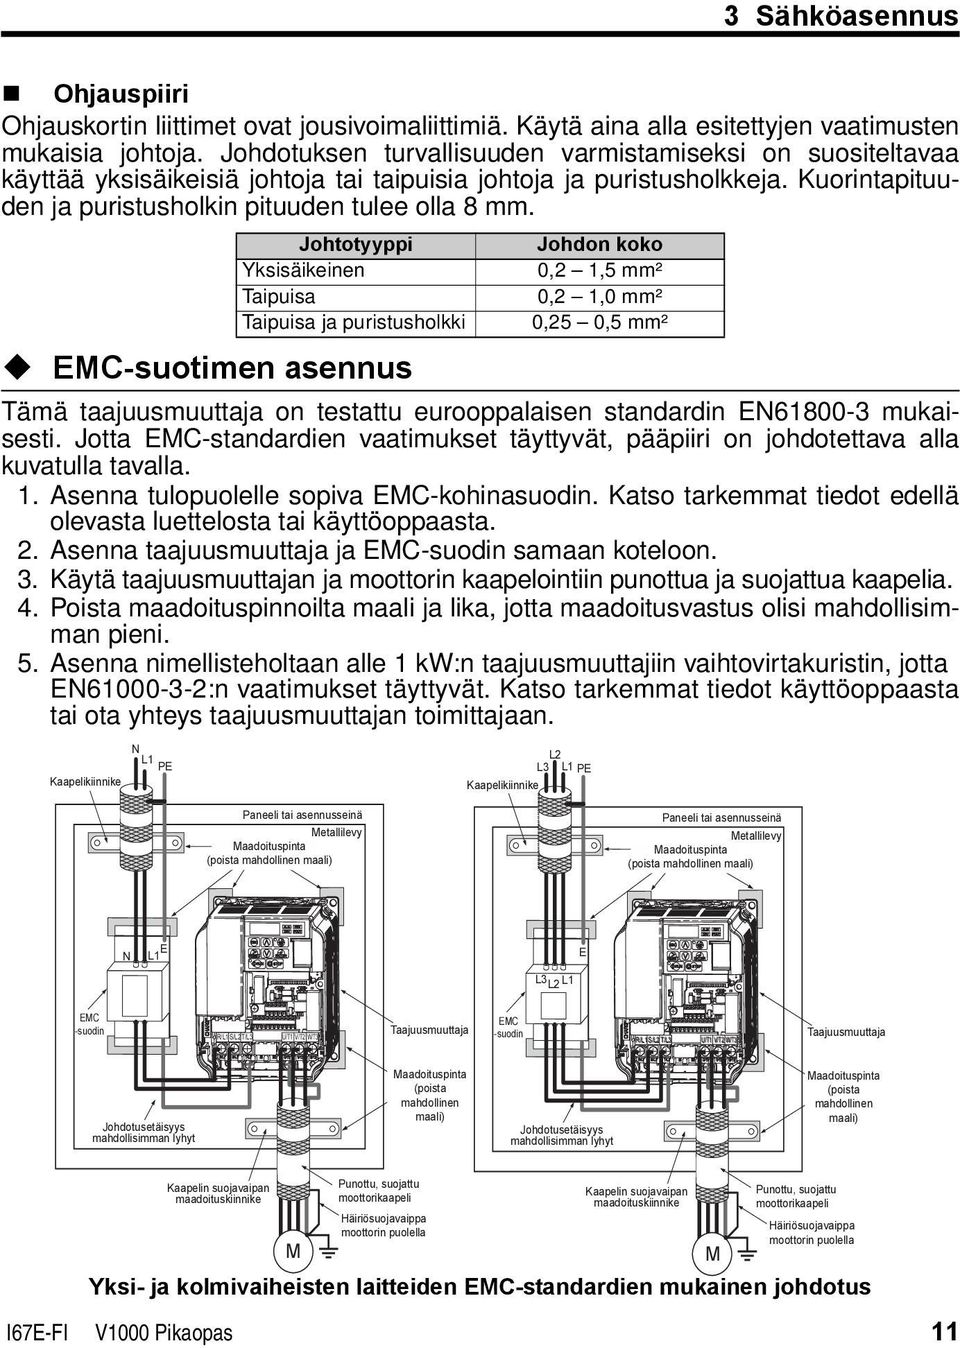 Johtotyyppi Yksisäikeinen Taipuisa Taipuisa ja puristusholkki Johdon koko 0,2 1,5 mm² 0,2 1,0 mm² 0,25 0,5 mm² EMC-suotimen asennus Tämä taajuusmuuttaja on testattu eurooppalaisen standardin